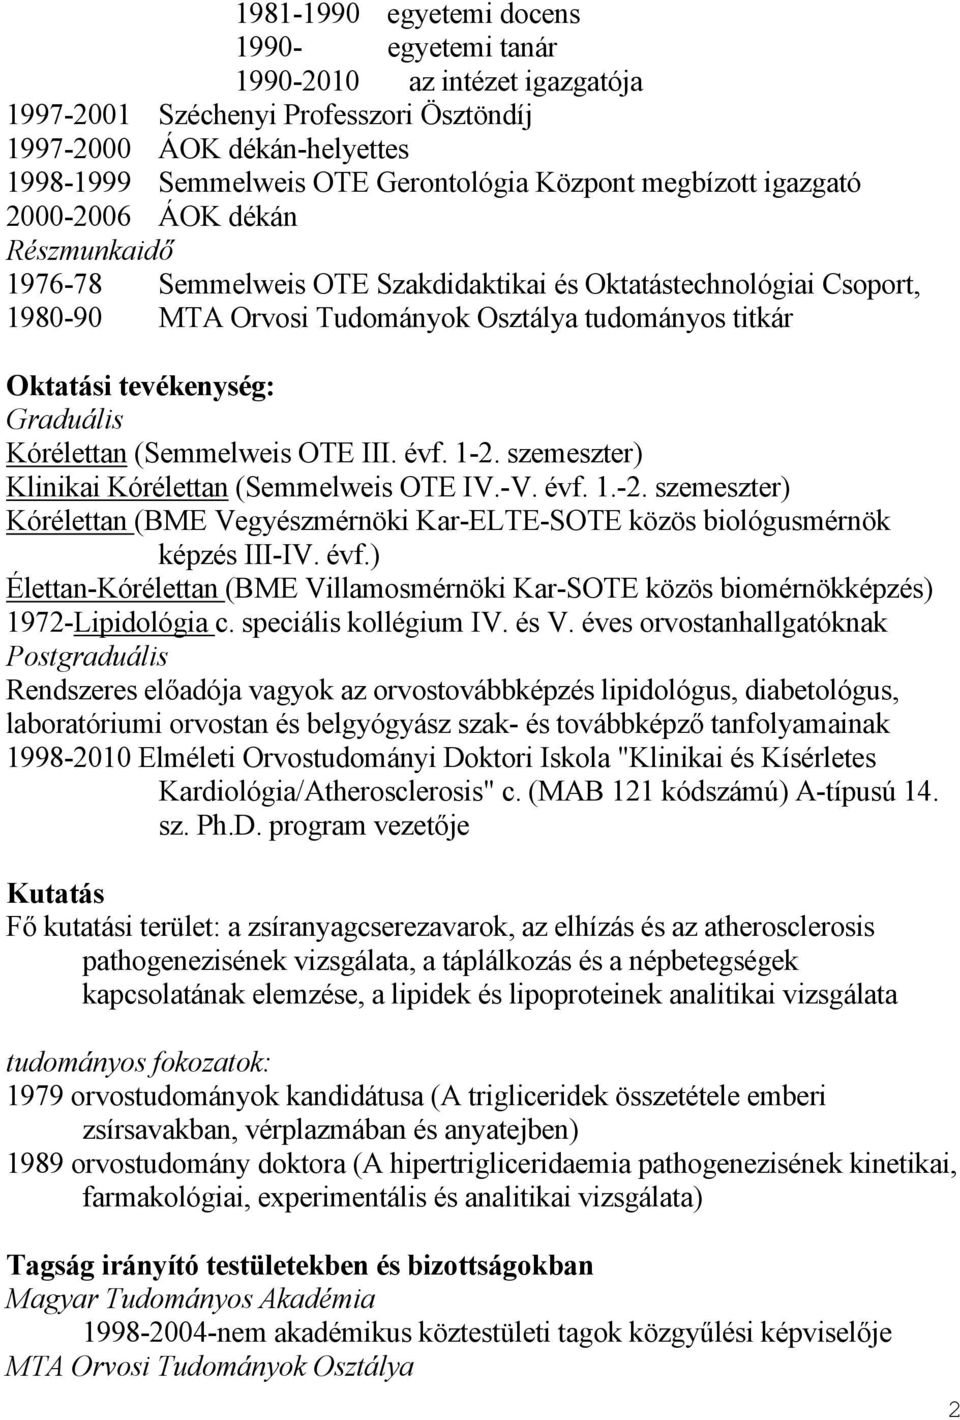 tevékenység: Graduális Kórélettan (Semmelweis OTE III. évf. 1-2. szemeszter) Klinikai Kórélettan (Semmelweis OTE IV.-V. évf. 1.-2. szemeszter) Kórélettan (BME Vegyészmérnöki Kar-ELTE-SOTE közös biológusmérnök képzés III-IV.